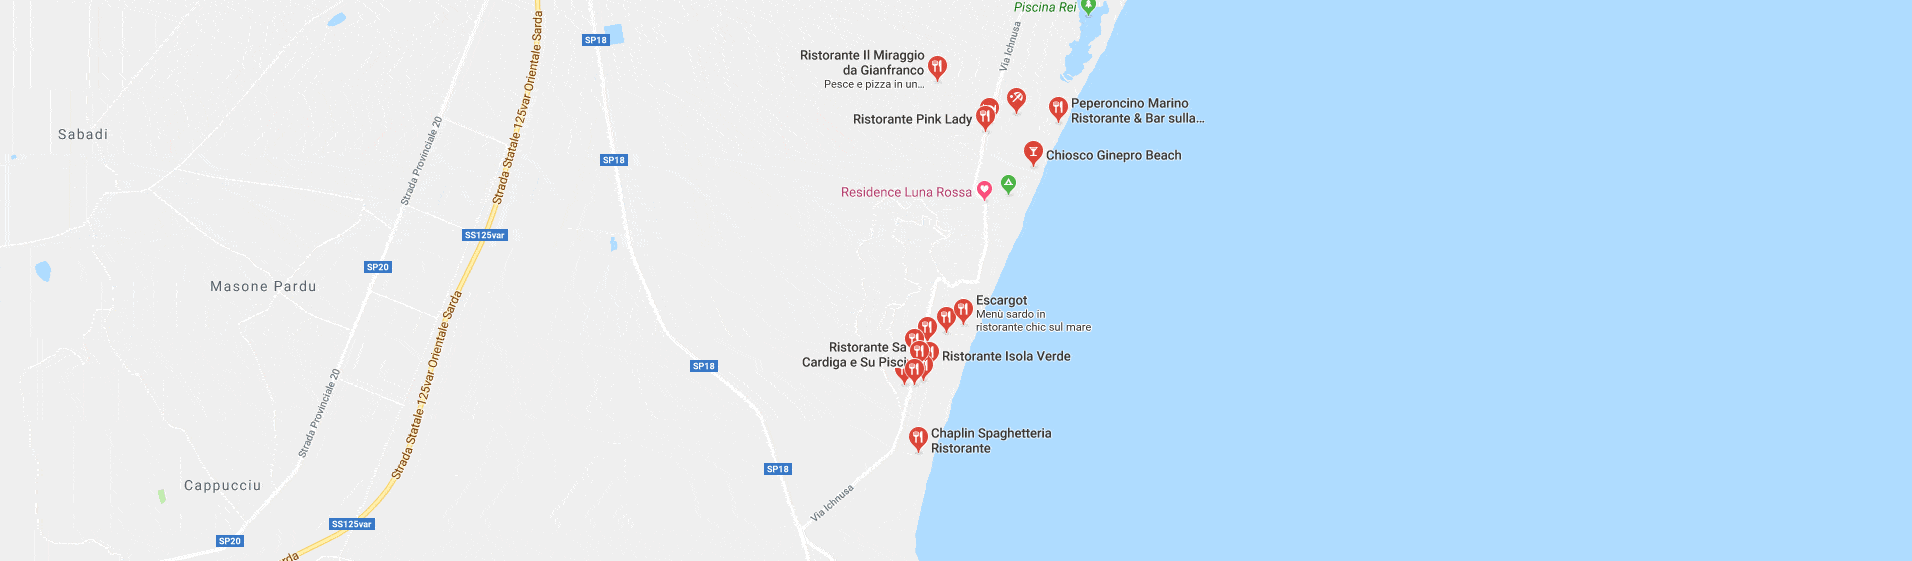 Mappa dei ristoranti di Costa Rei, Sardegna